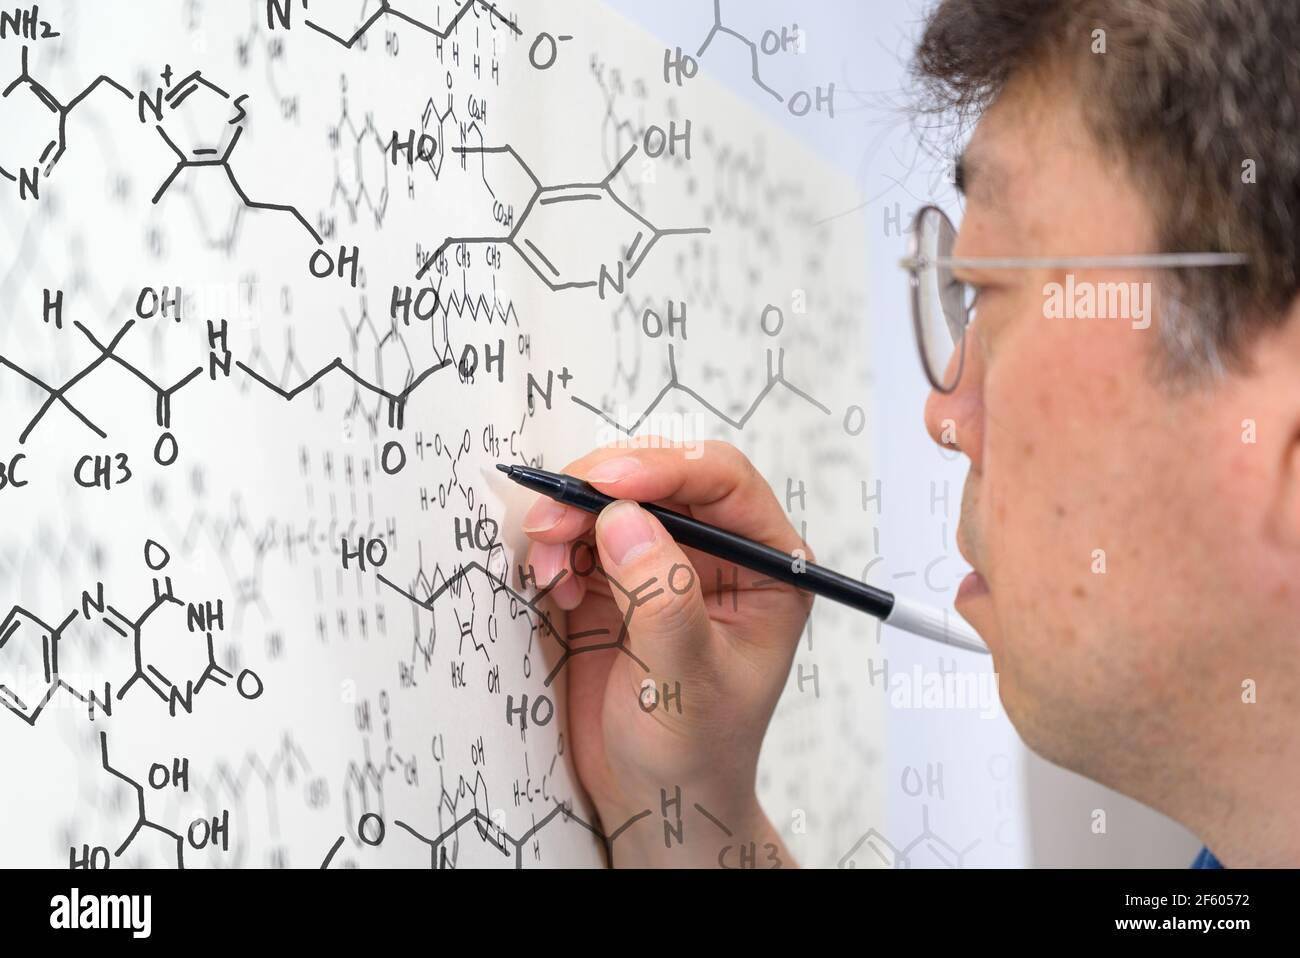 Un scientifique asiatique d'âge moyen écrit des formules chimiques sur un tableau blanc. Banque D'Images